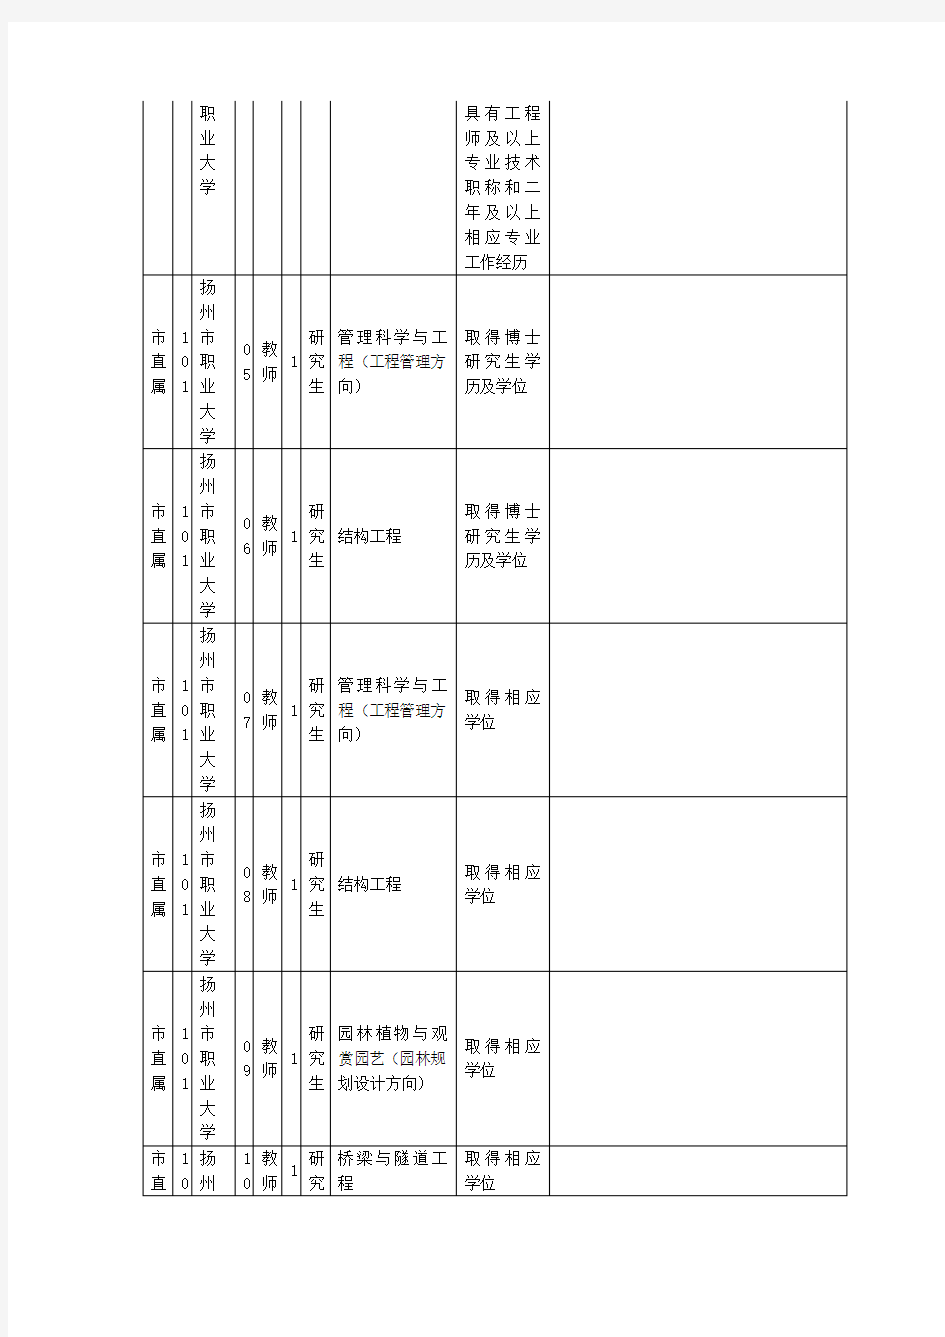 扬州市2011年公开招聘市直事业单位工作人员职位表(B)